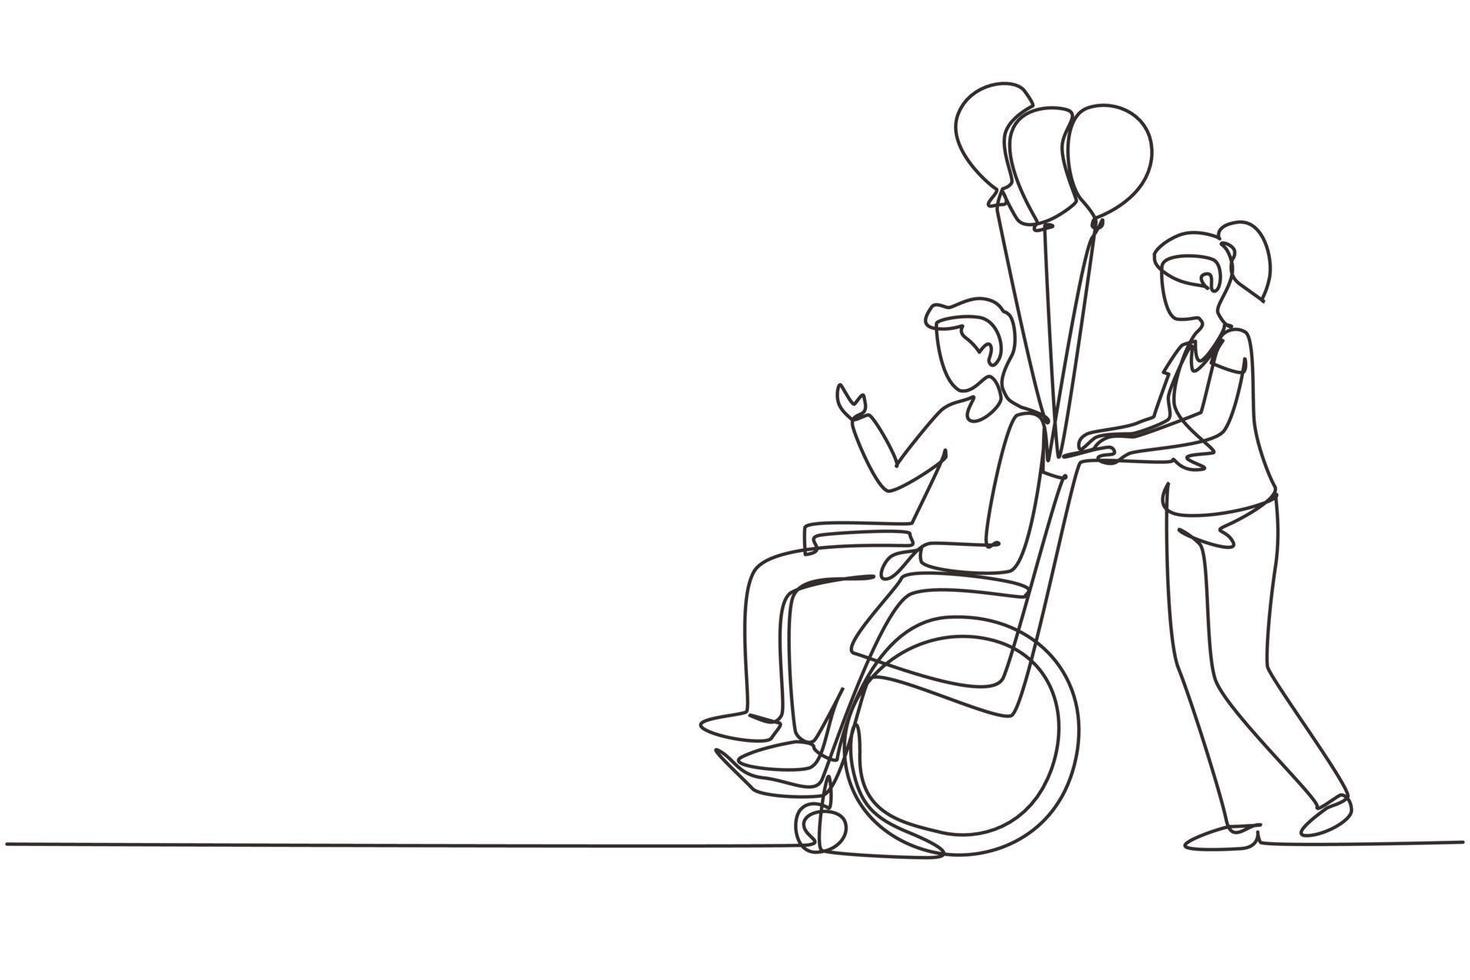 concetto di scena di persone con disabilità di disegno a linea continua. la donna porta l'uomo disabile in sedia a rotelle. accessibilità, riabilitazione persona invalida, attività delle persone. vettore di disegno a linea singola